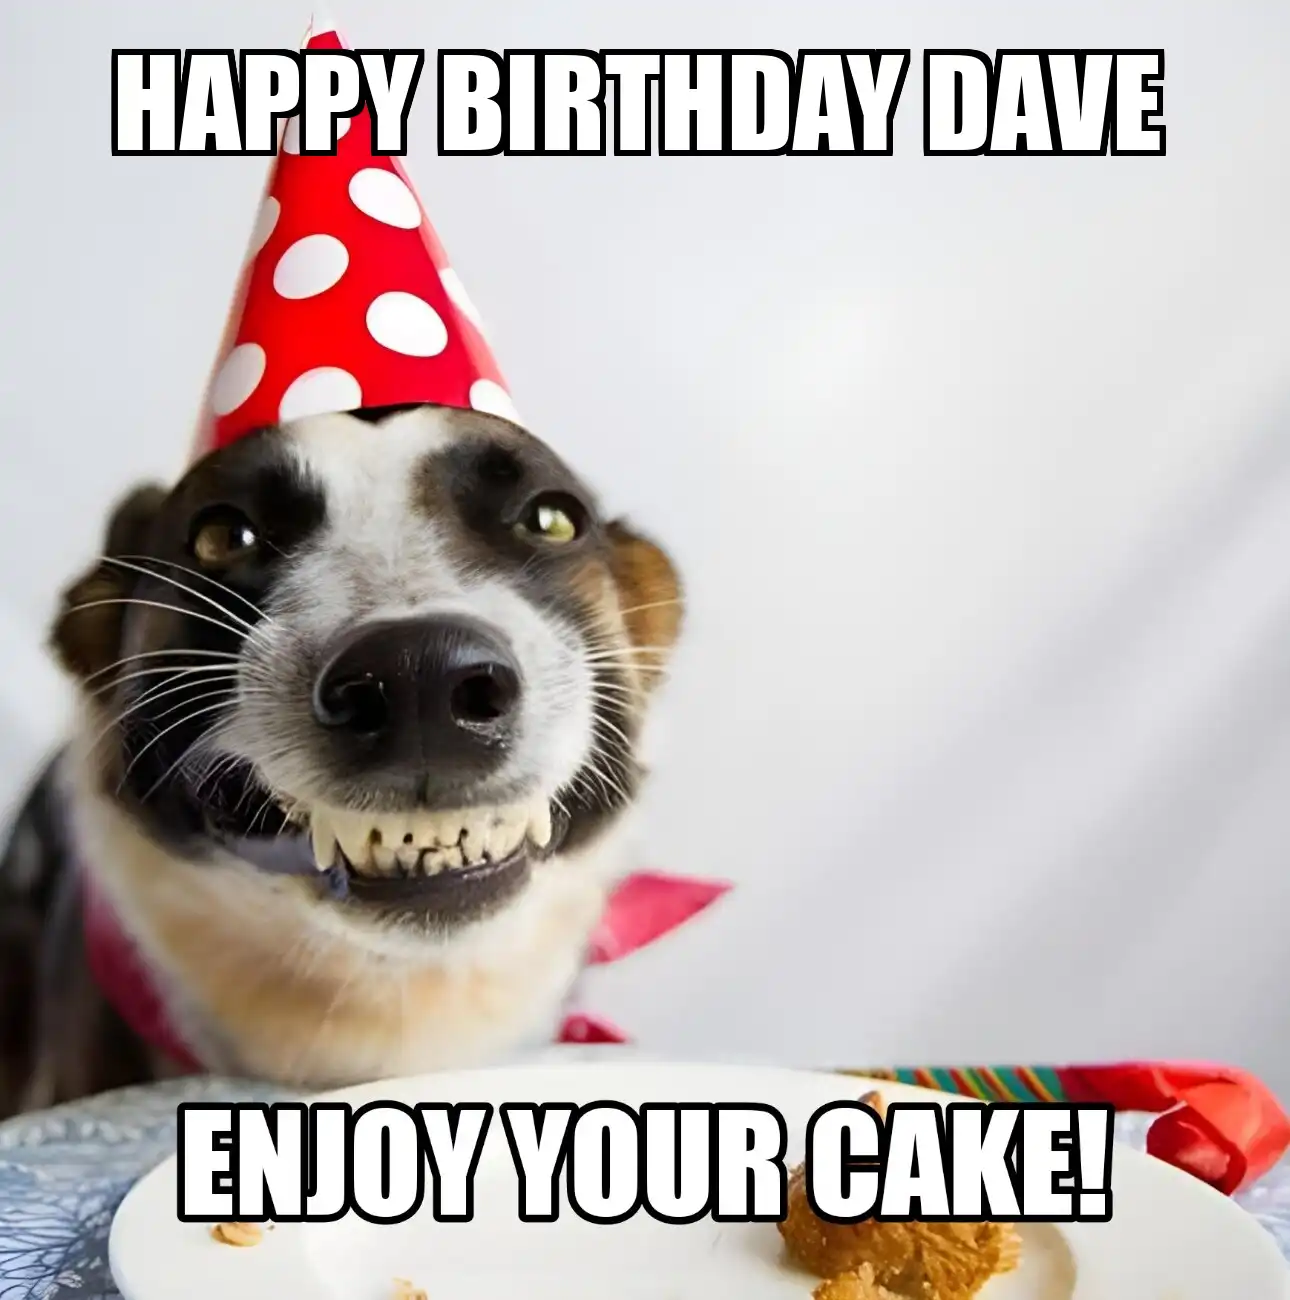 Happy Birthday Dave Enjoy Your Cake Dog Meme